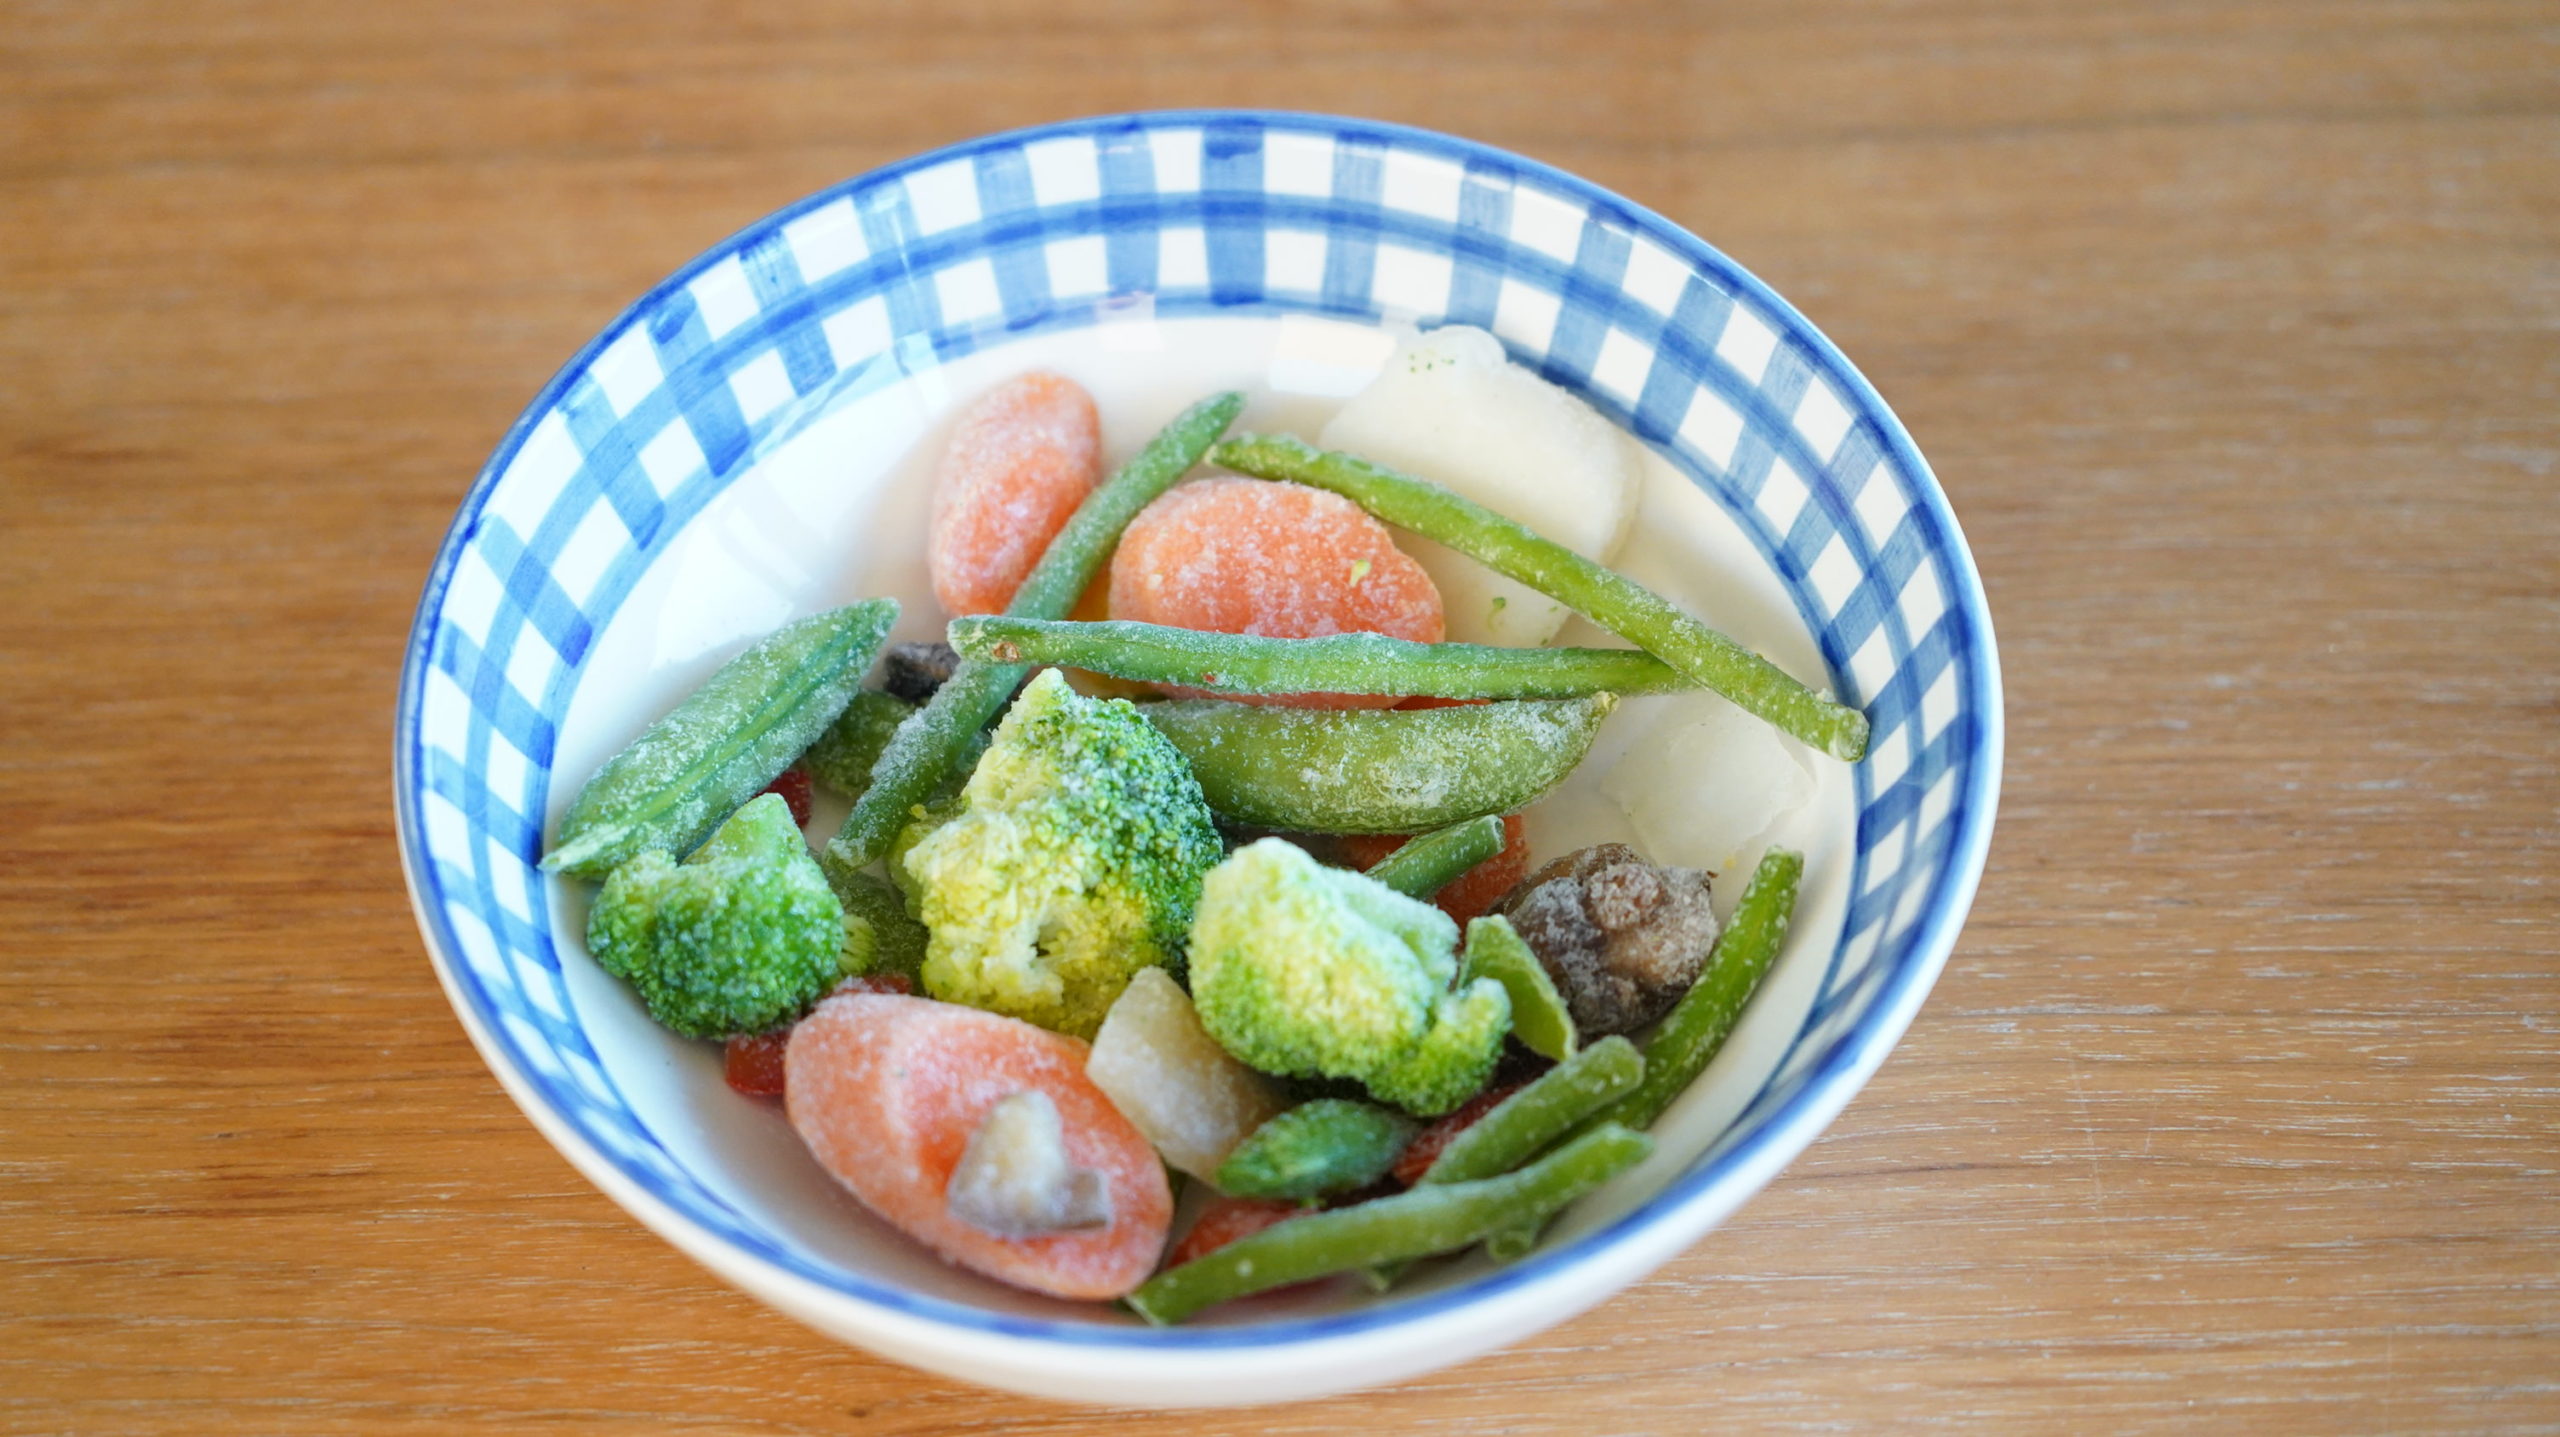 コストコの冷凍食品「ステアフライ・ベジタブルブレンド」が色鮮やかな様子の写真